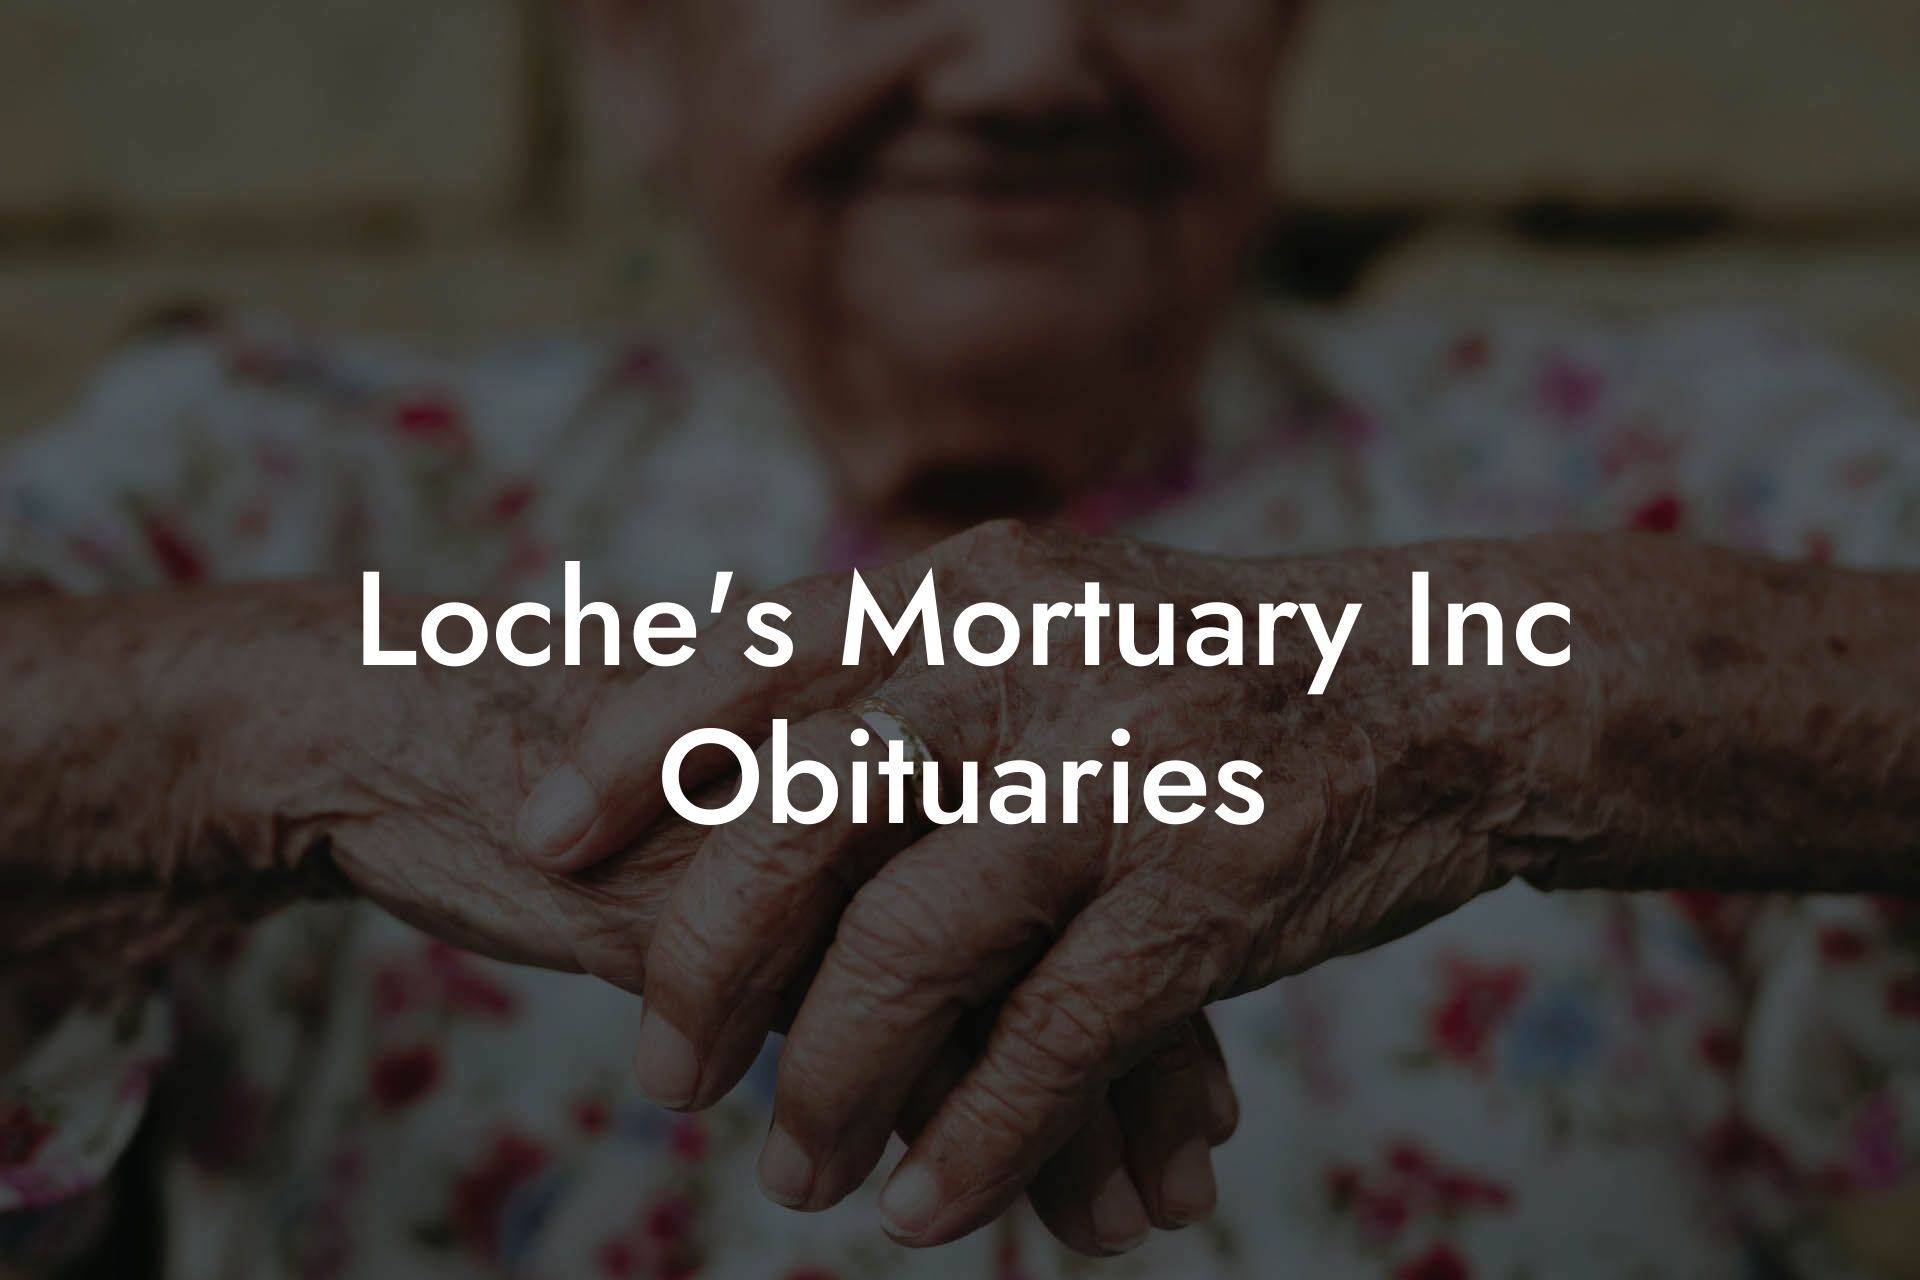 Loche's Mortuary Inc Obituaries